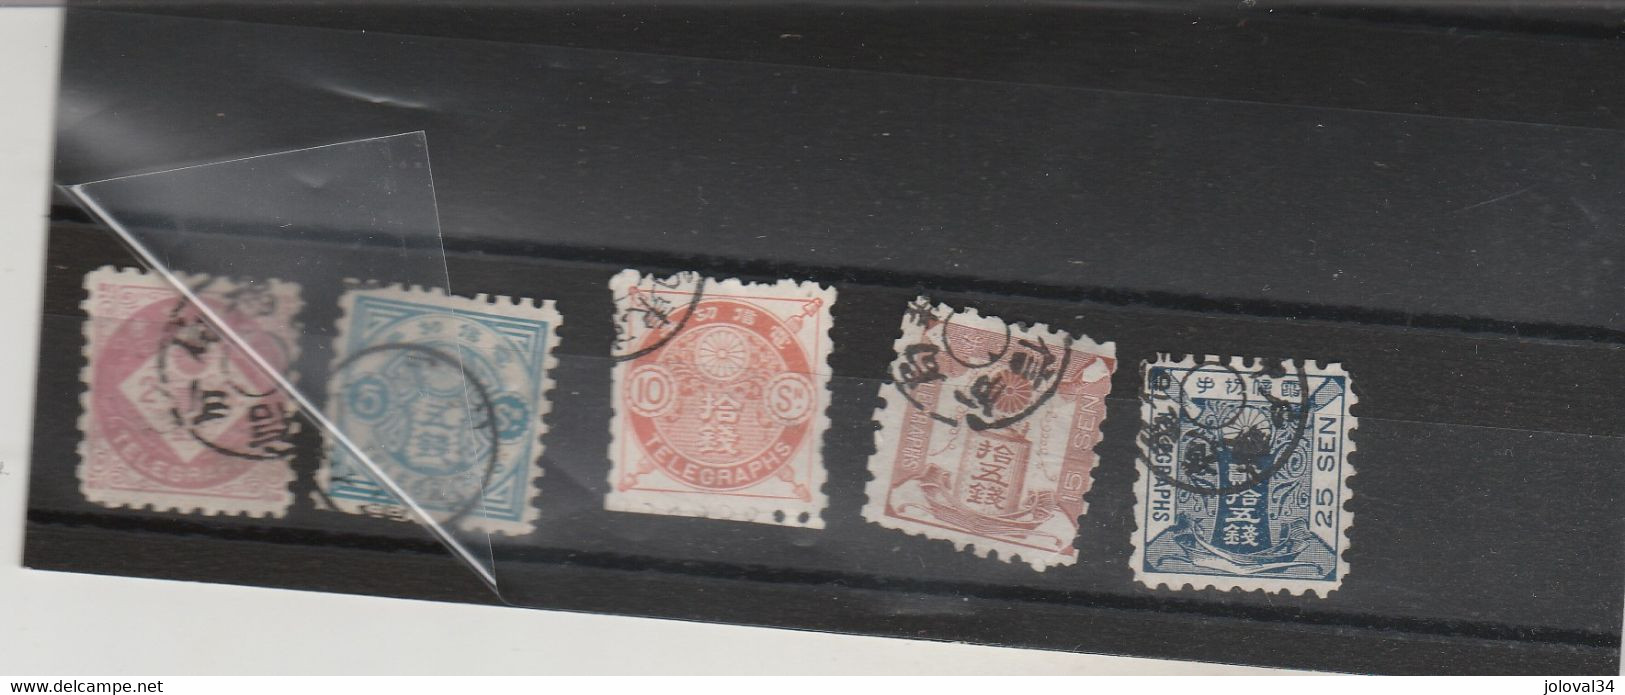 Japon Télégraphe Yvert  2  + 5 + 6 + 7 + 8 Oblitérés Lot 2 - Telegraph Stamps